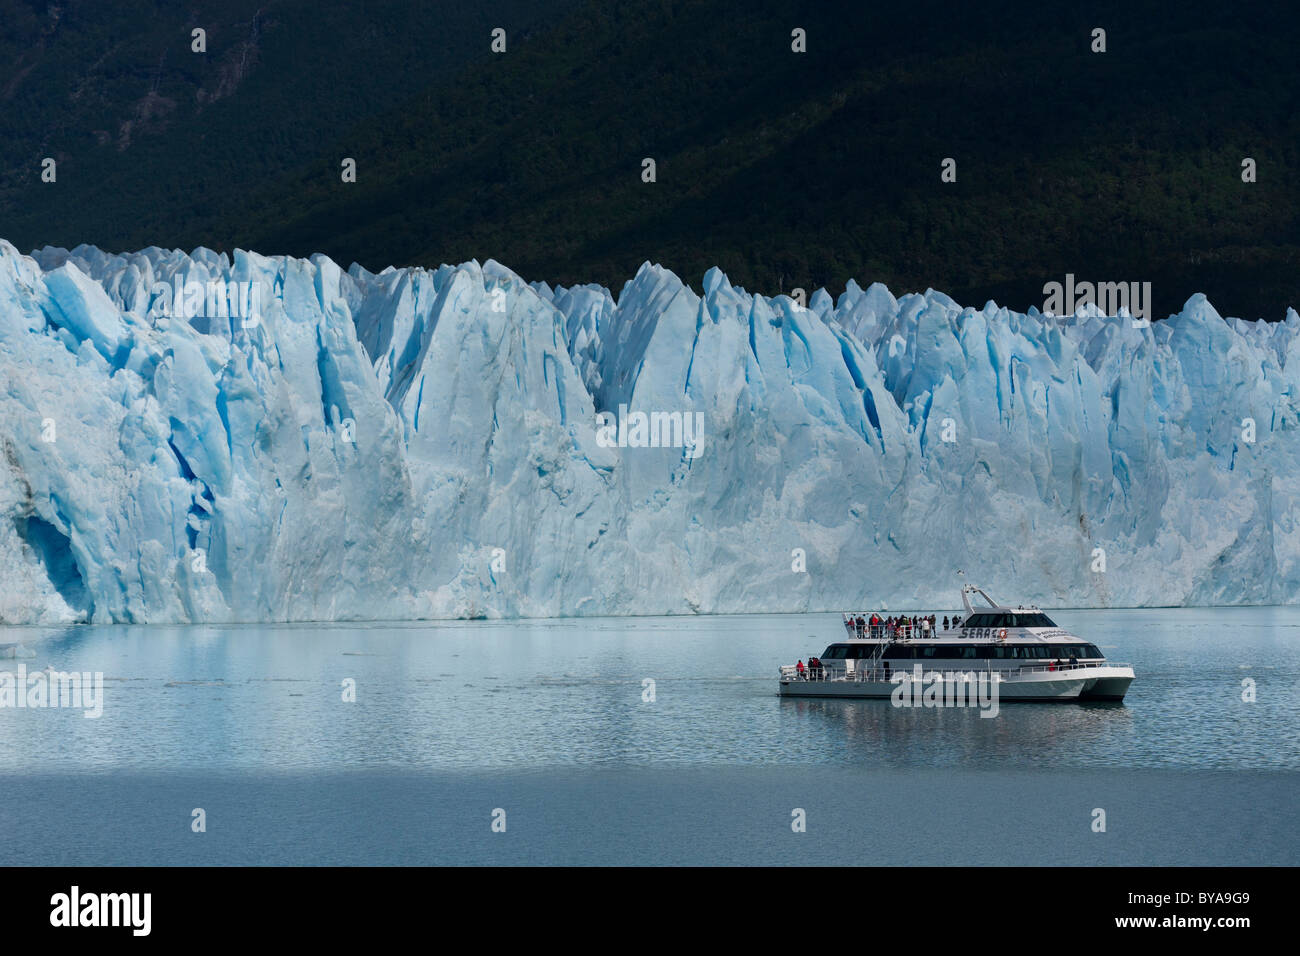 Boat tour to the Perito Moreno Glacier, Parque Nacional Los Glaciares, Los Glaciares National Park, Patagonia, Argentina Stock Photo